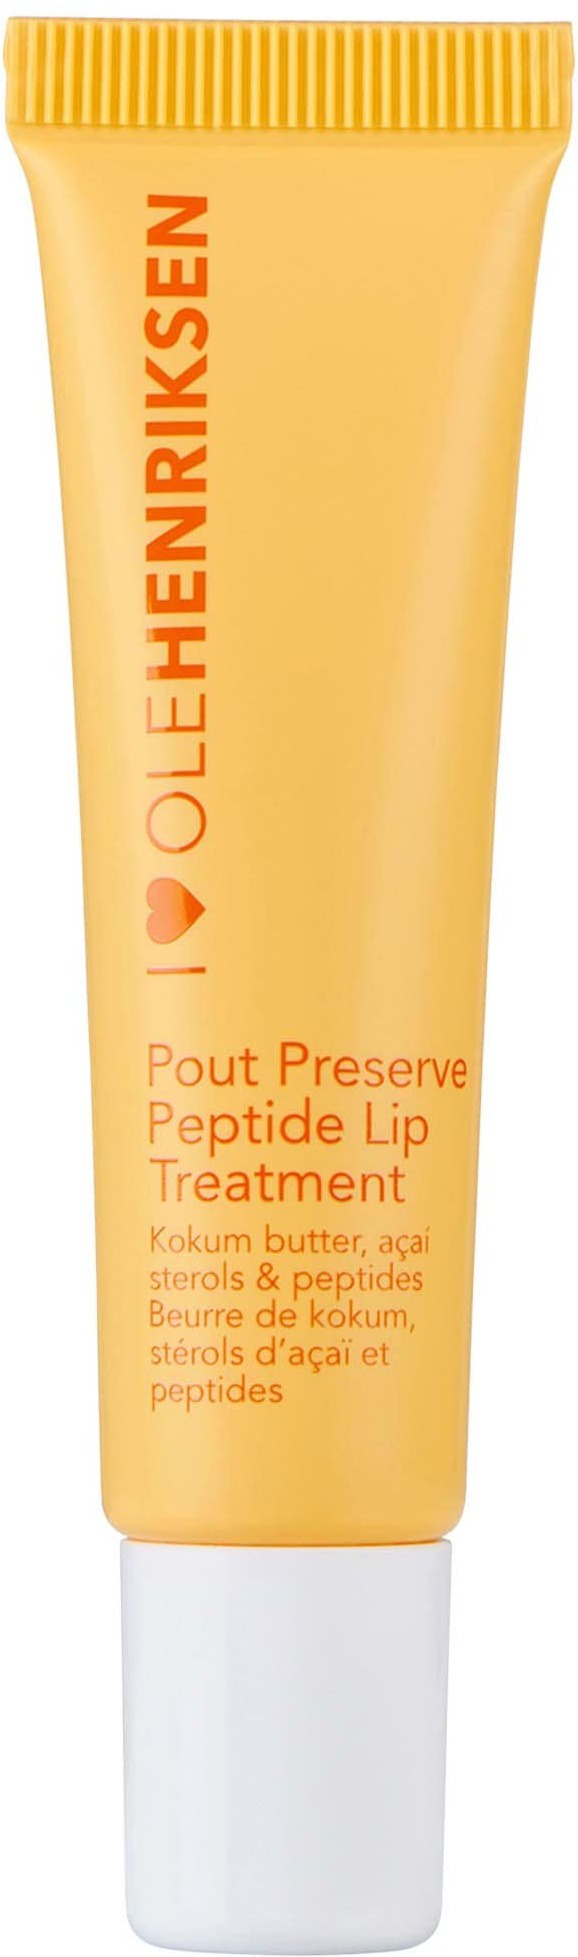 Ole Henriksen Pout Preserve Peptide Lip Treatment